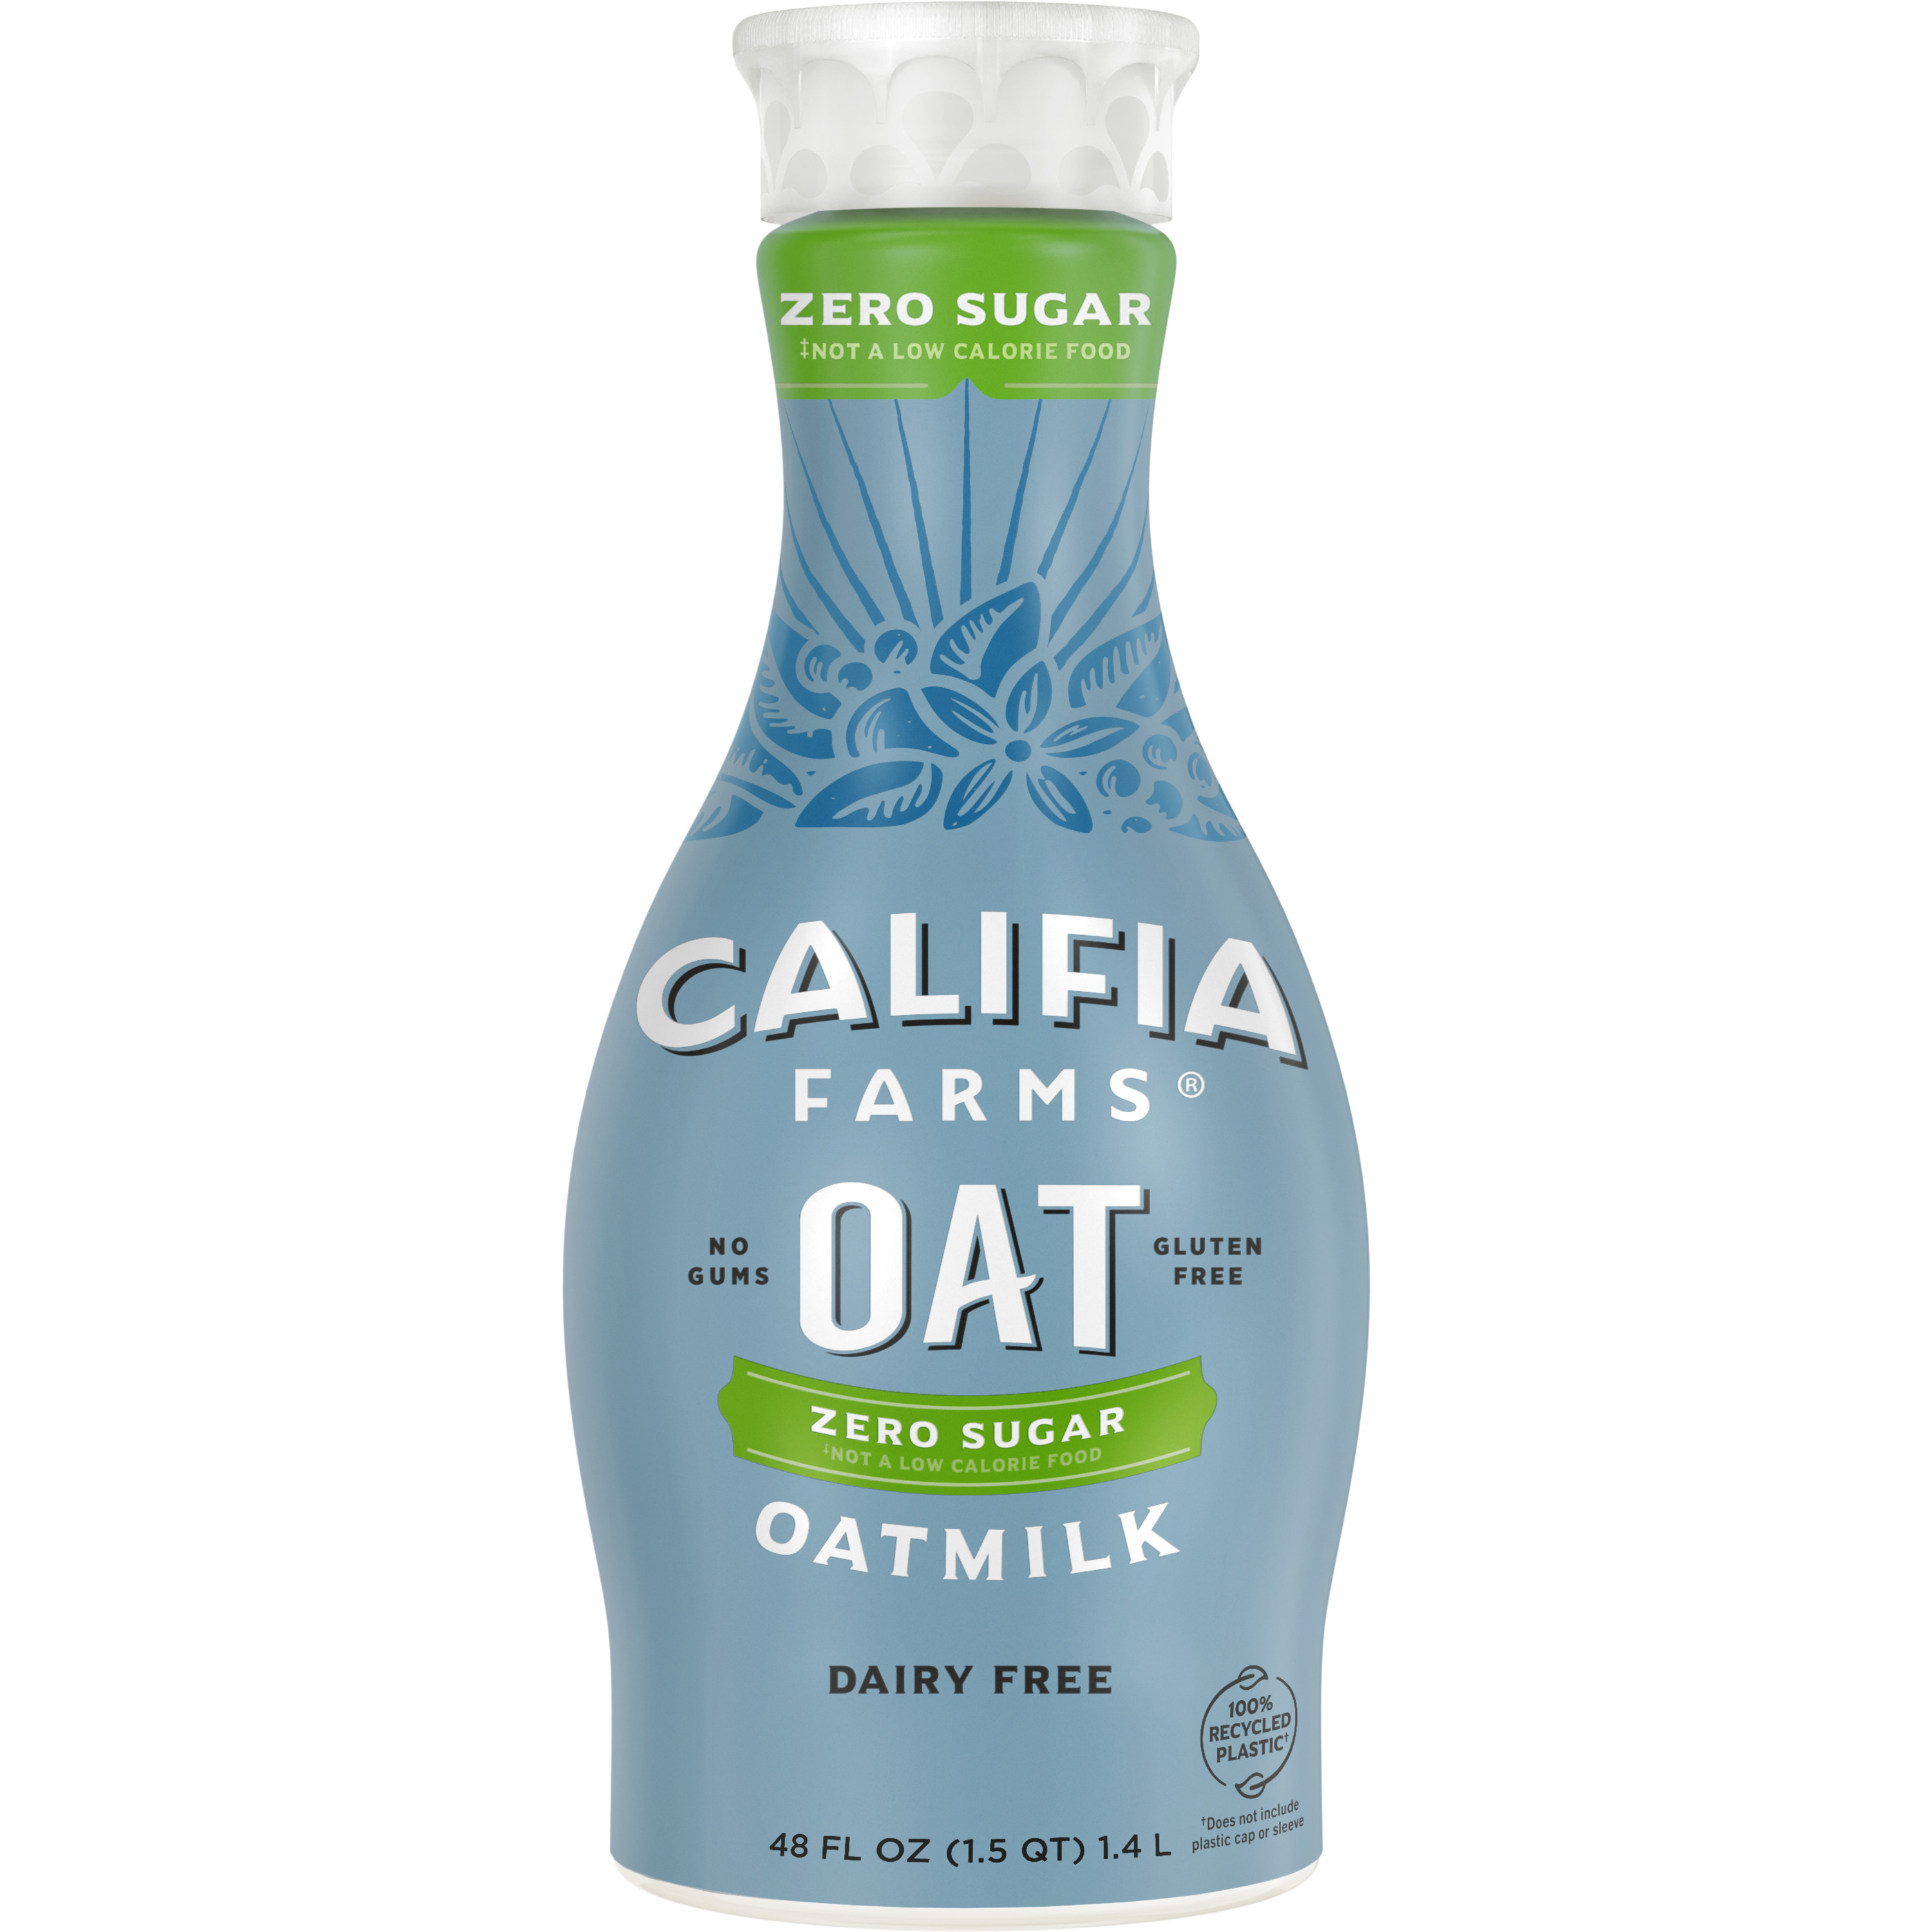 Califia Farms Oatmilk - Zero Sugar 6 units per case 48.0 oz